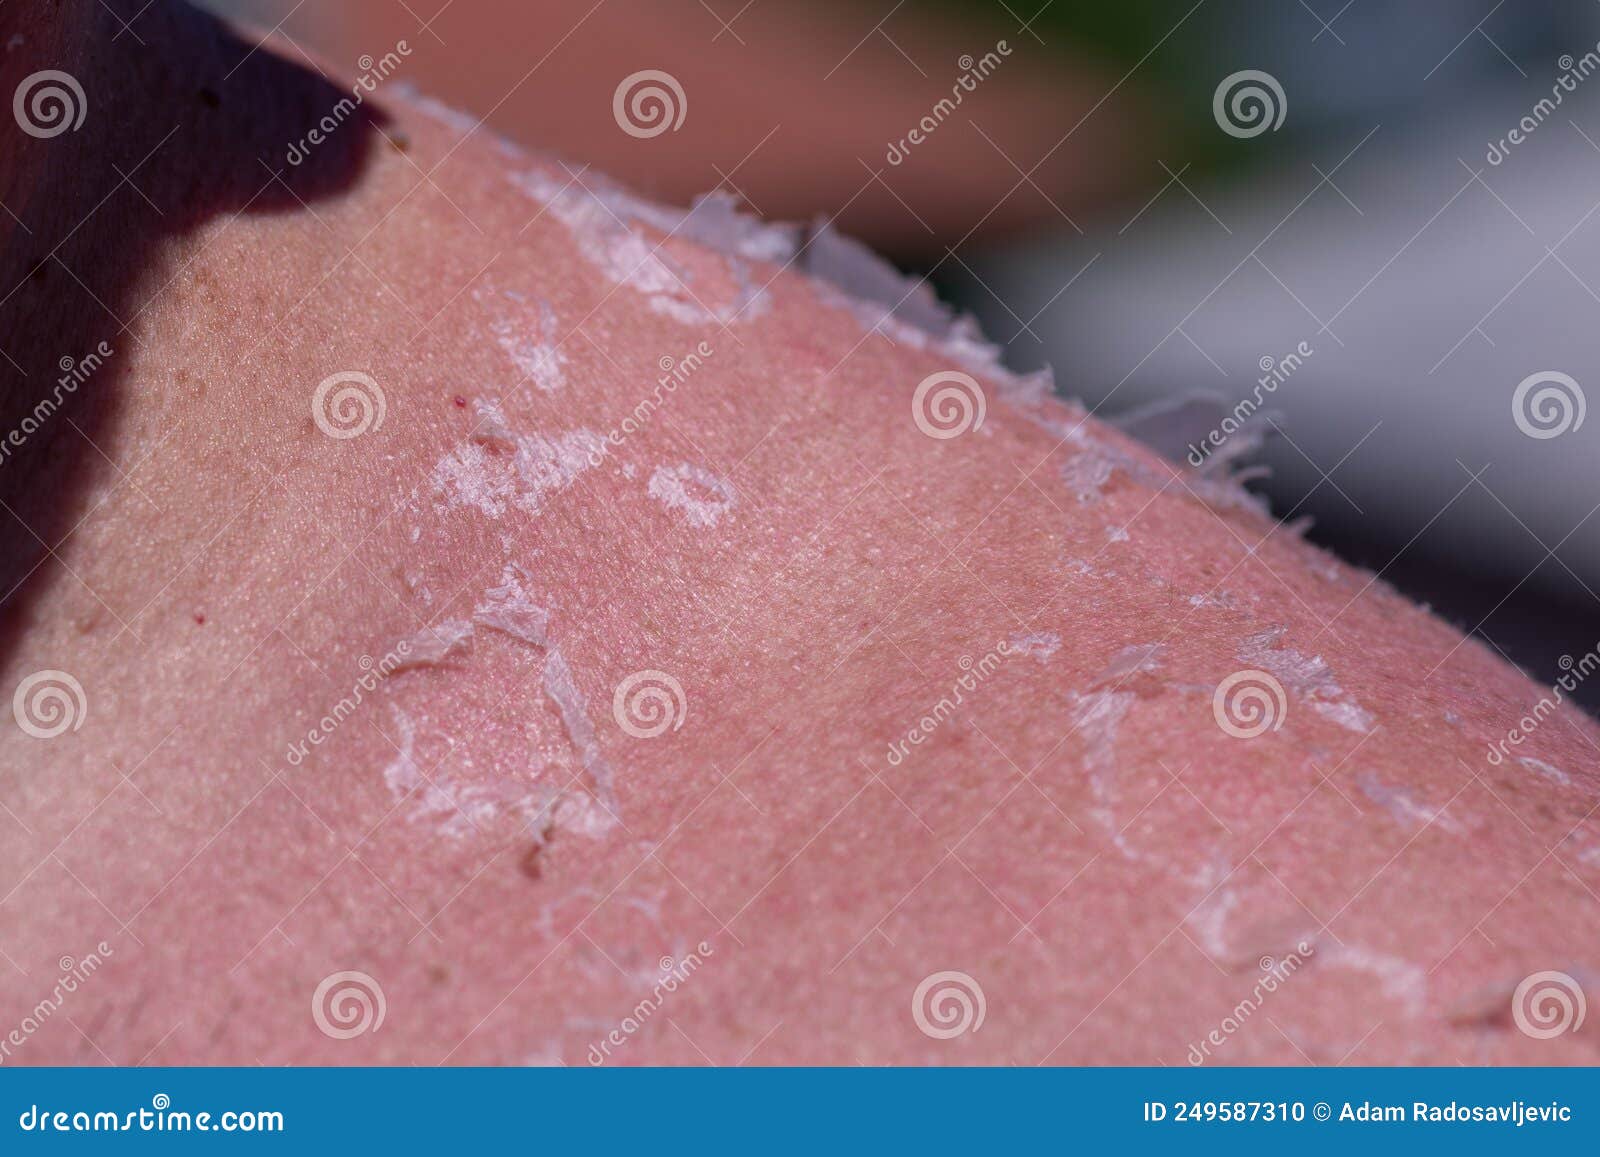 Peeling Sunburned Skin On Back And Shoulder Stock Photo Image Of